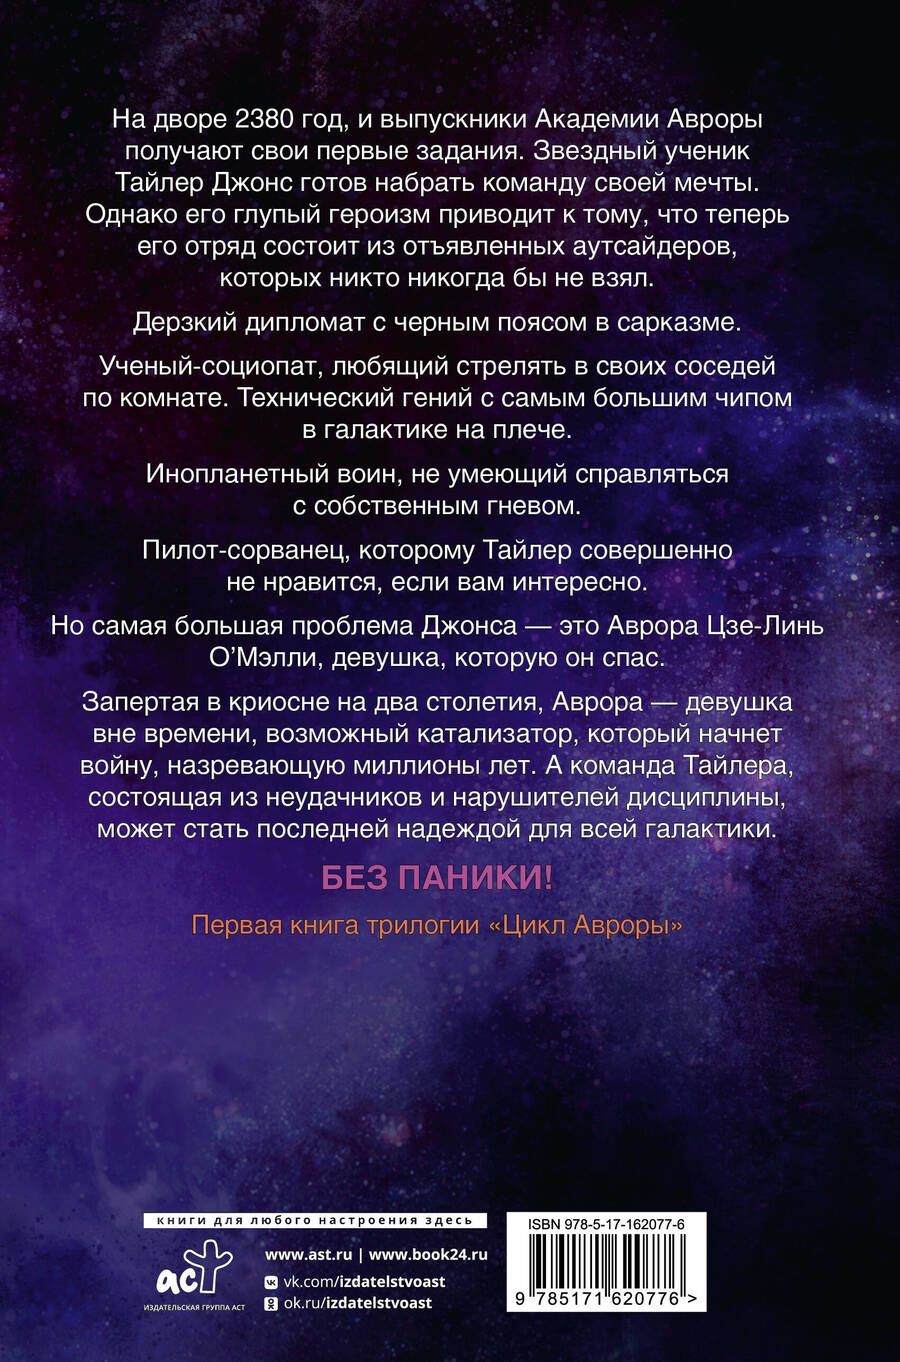 Обложка книги "Кристофф, Кауфман: Звезда Авроры"